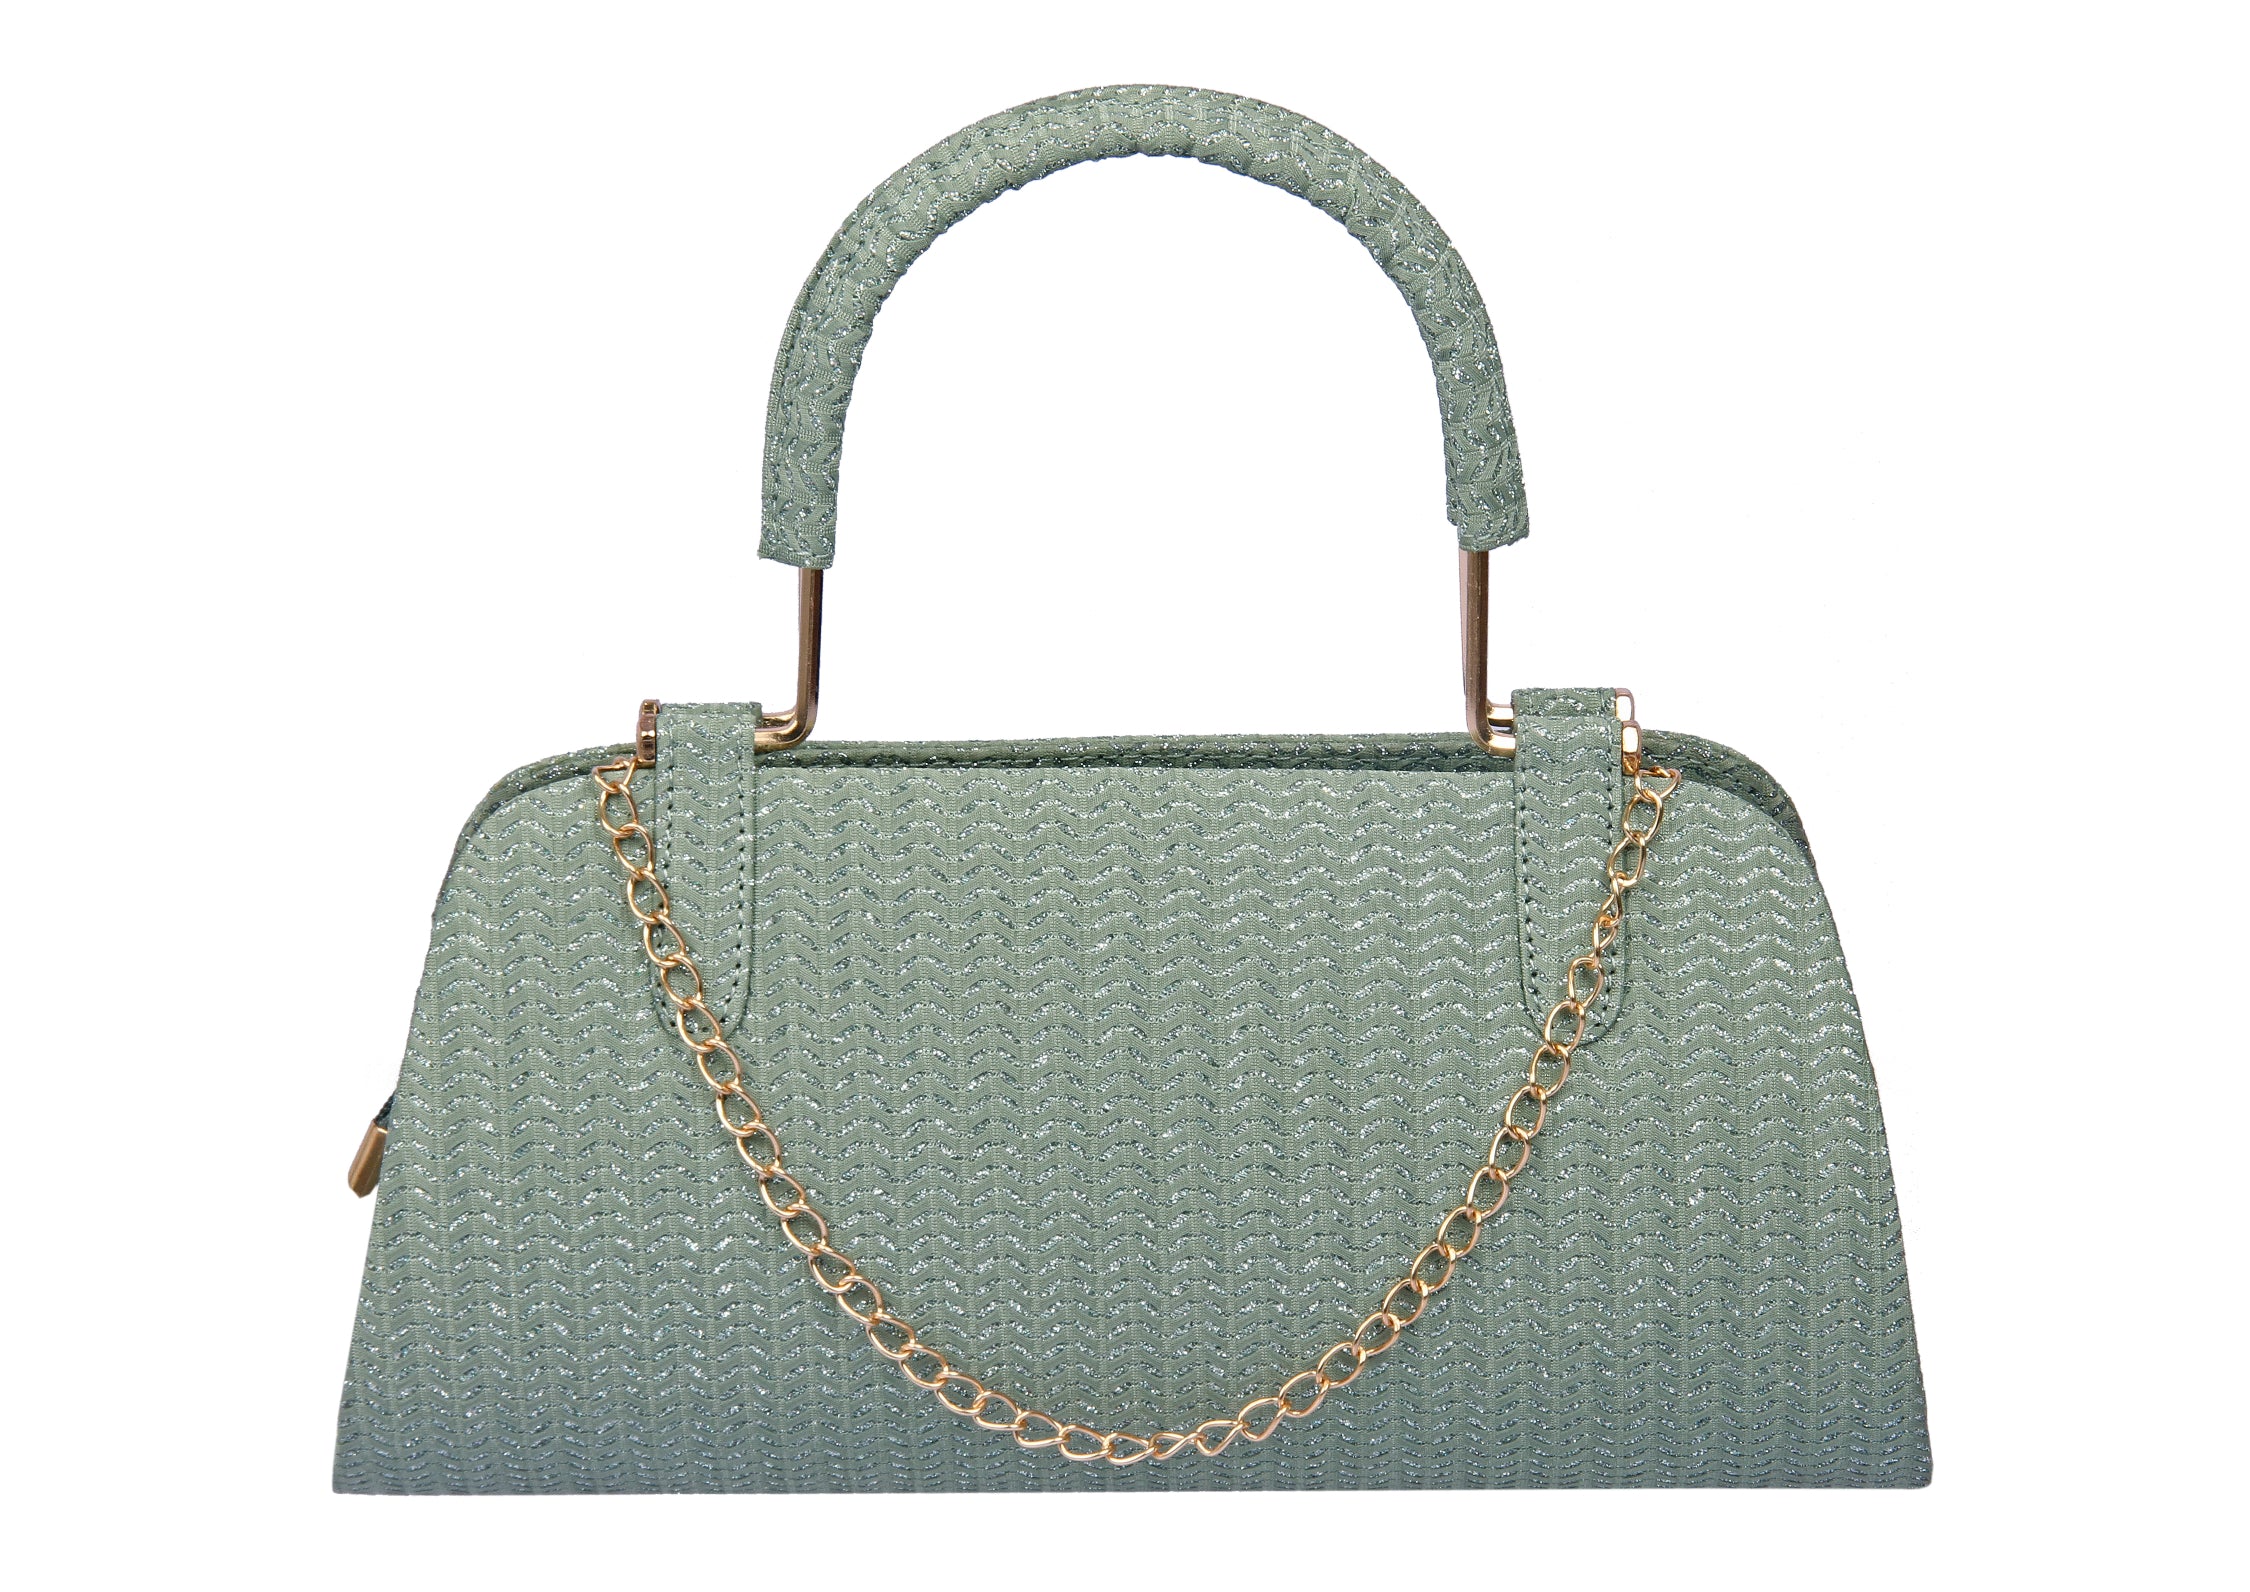 LULU TOWNSEND Gold Floral Box handbag purse clutch NWT | eBay